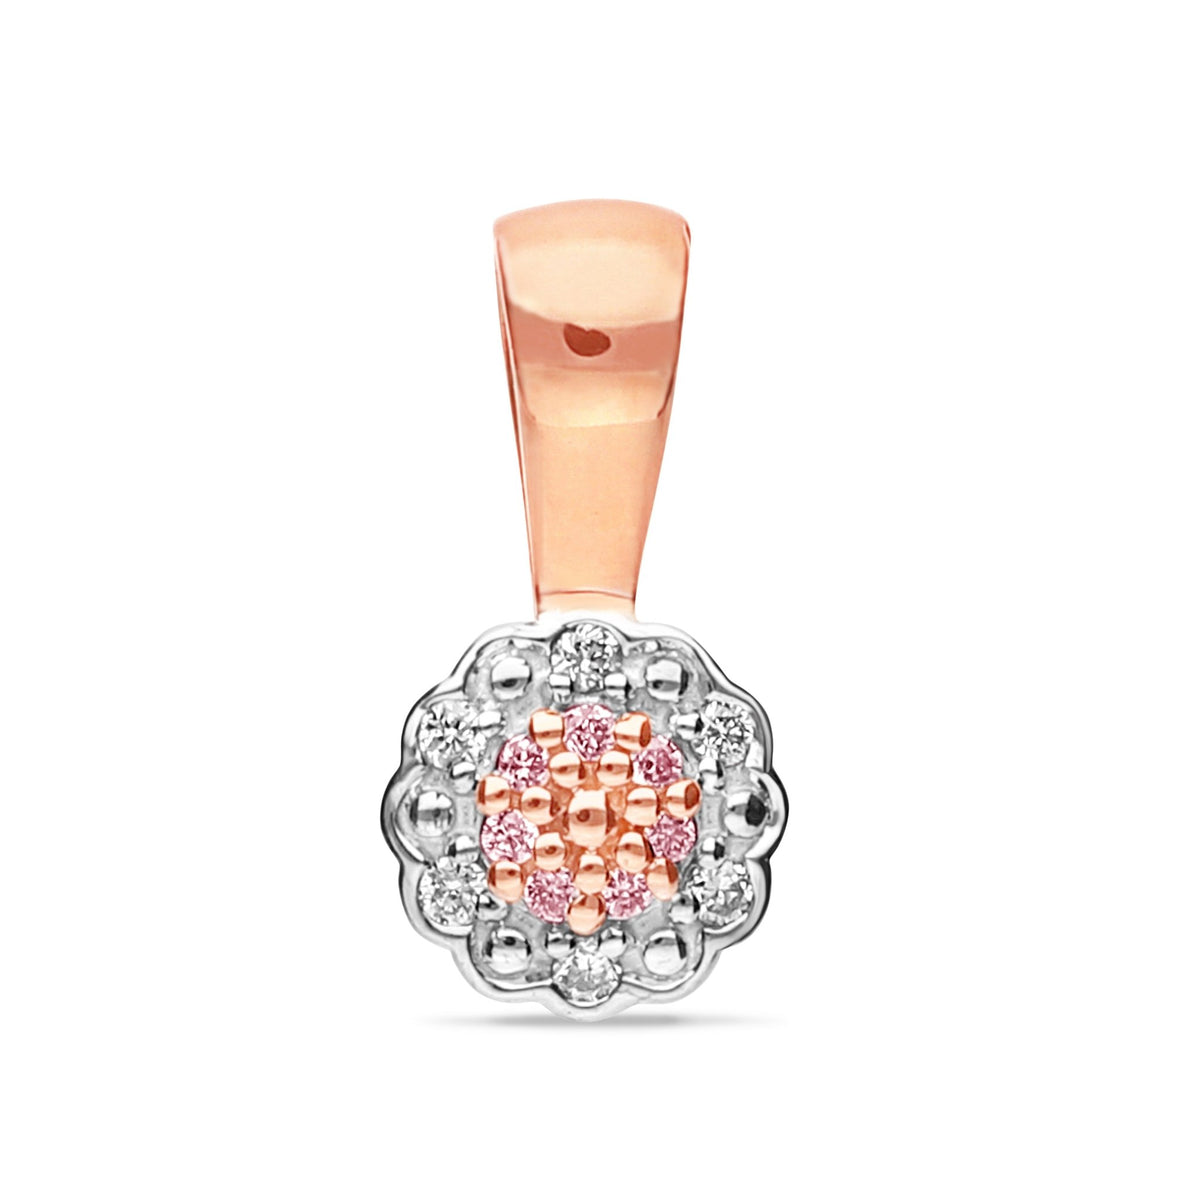 Pink and white diamond flower pendant - Markbridge Jewellers